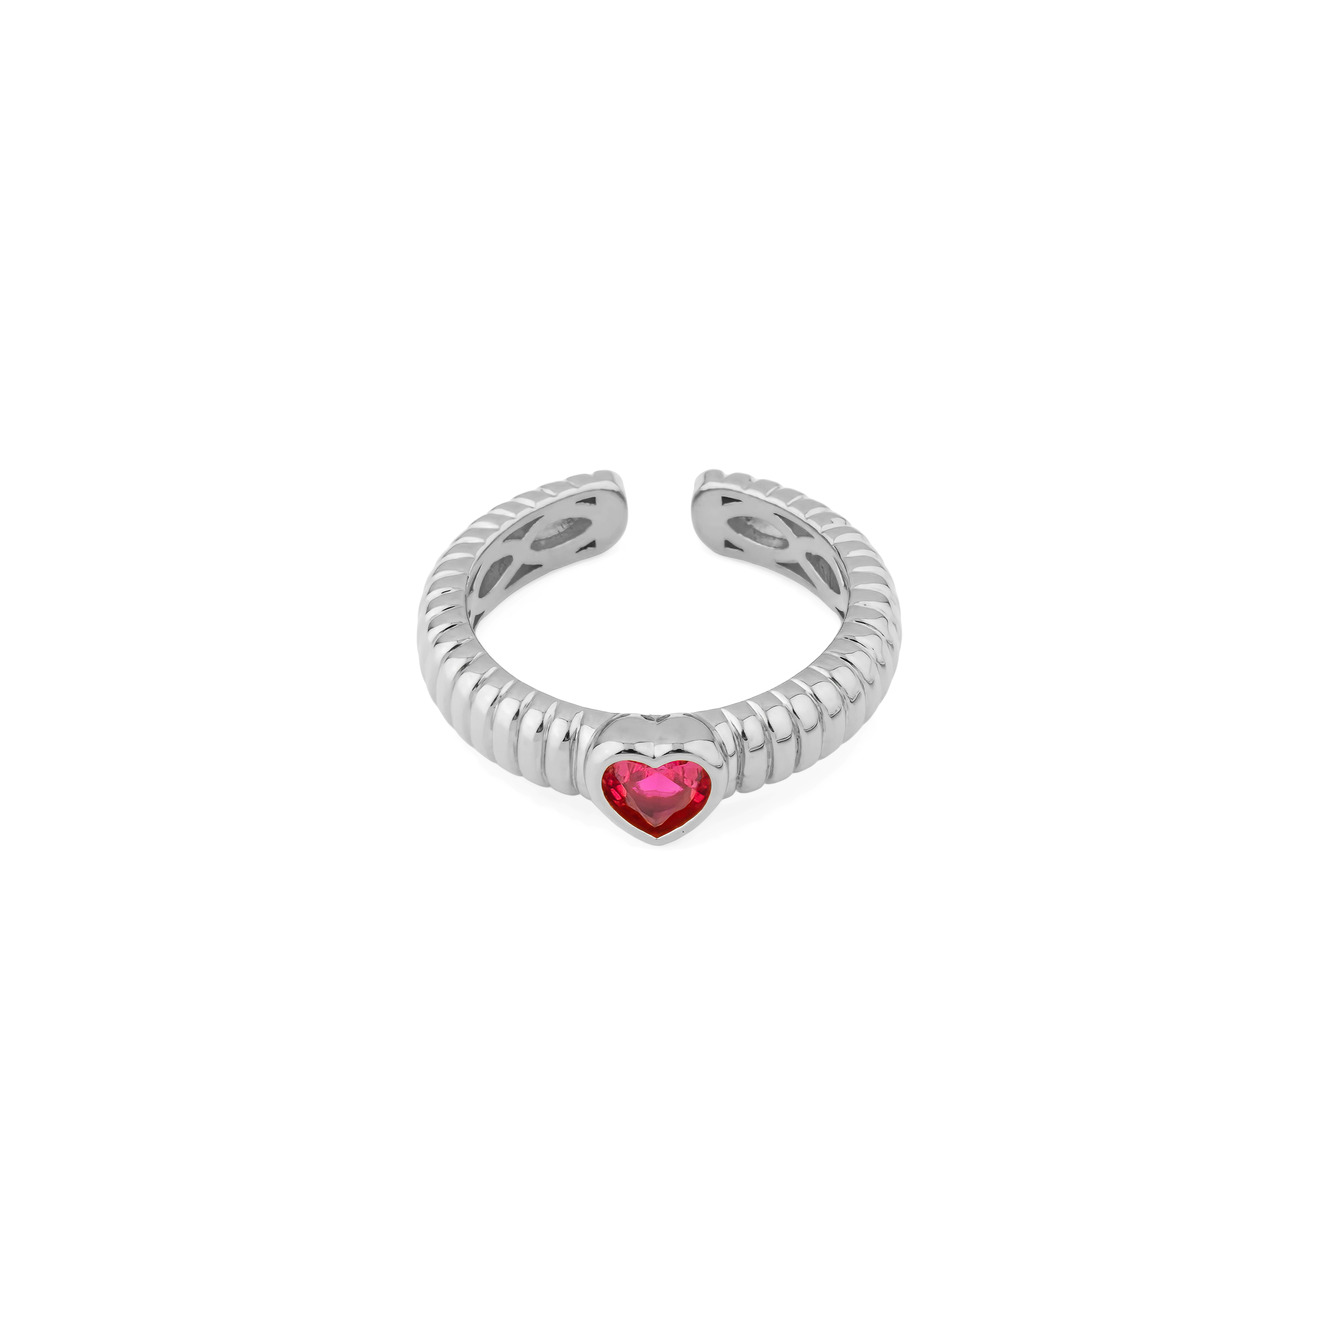 Herald Percy Серебристое фигурное кольцо с красным сердцем herald percy серебристое колье с розовым сердцем